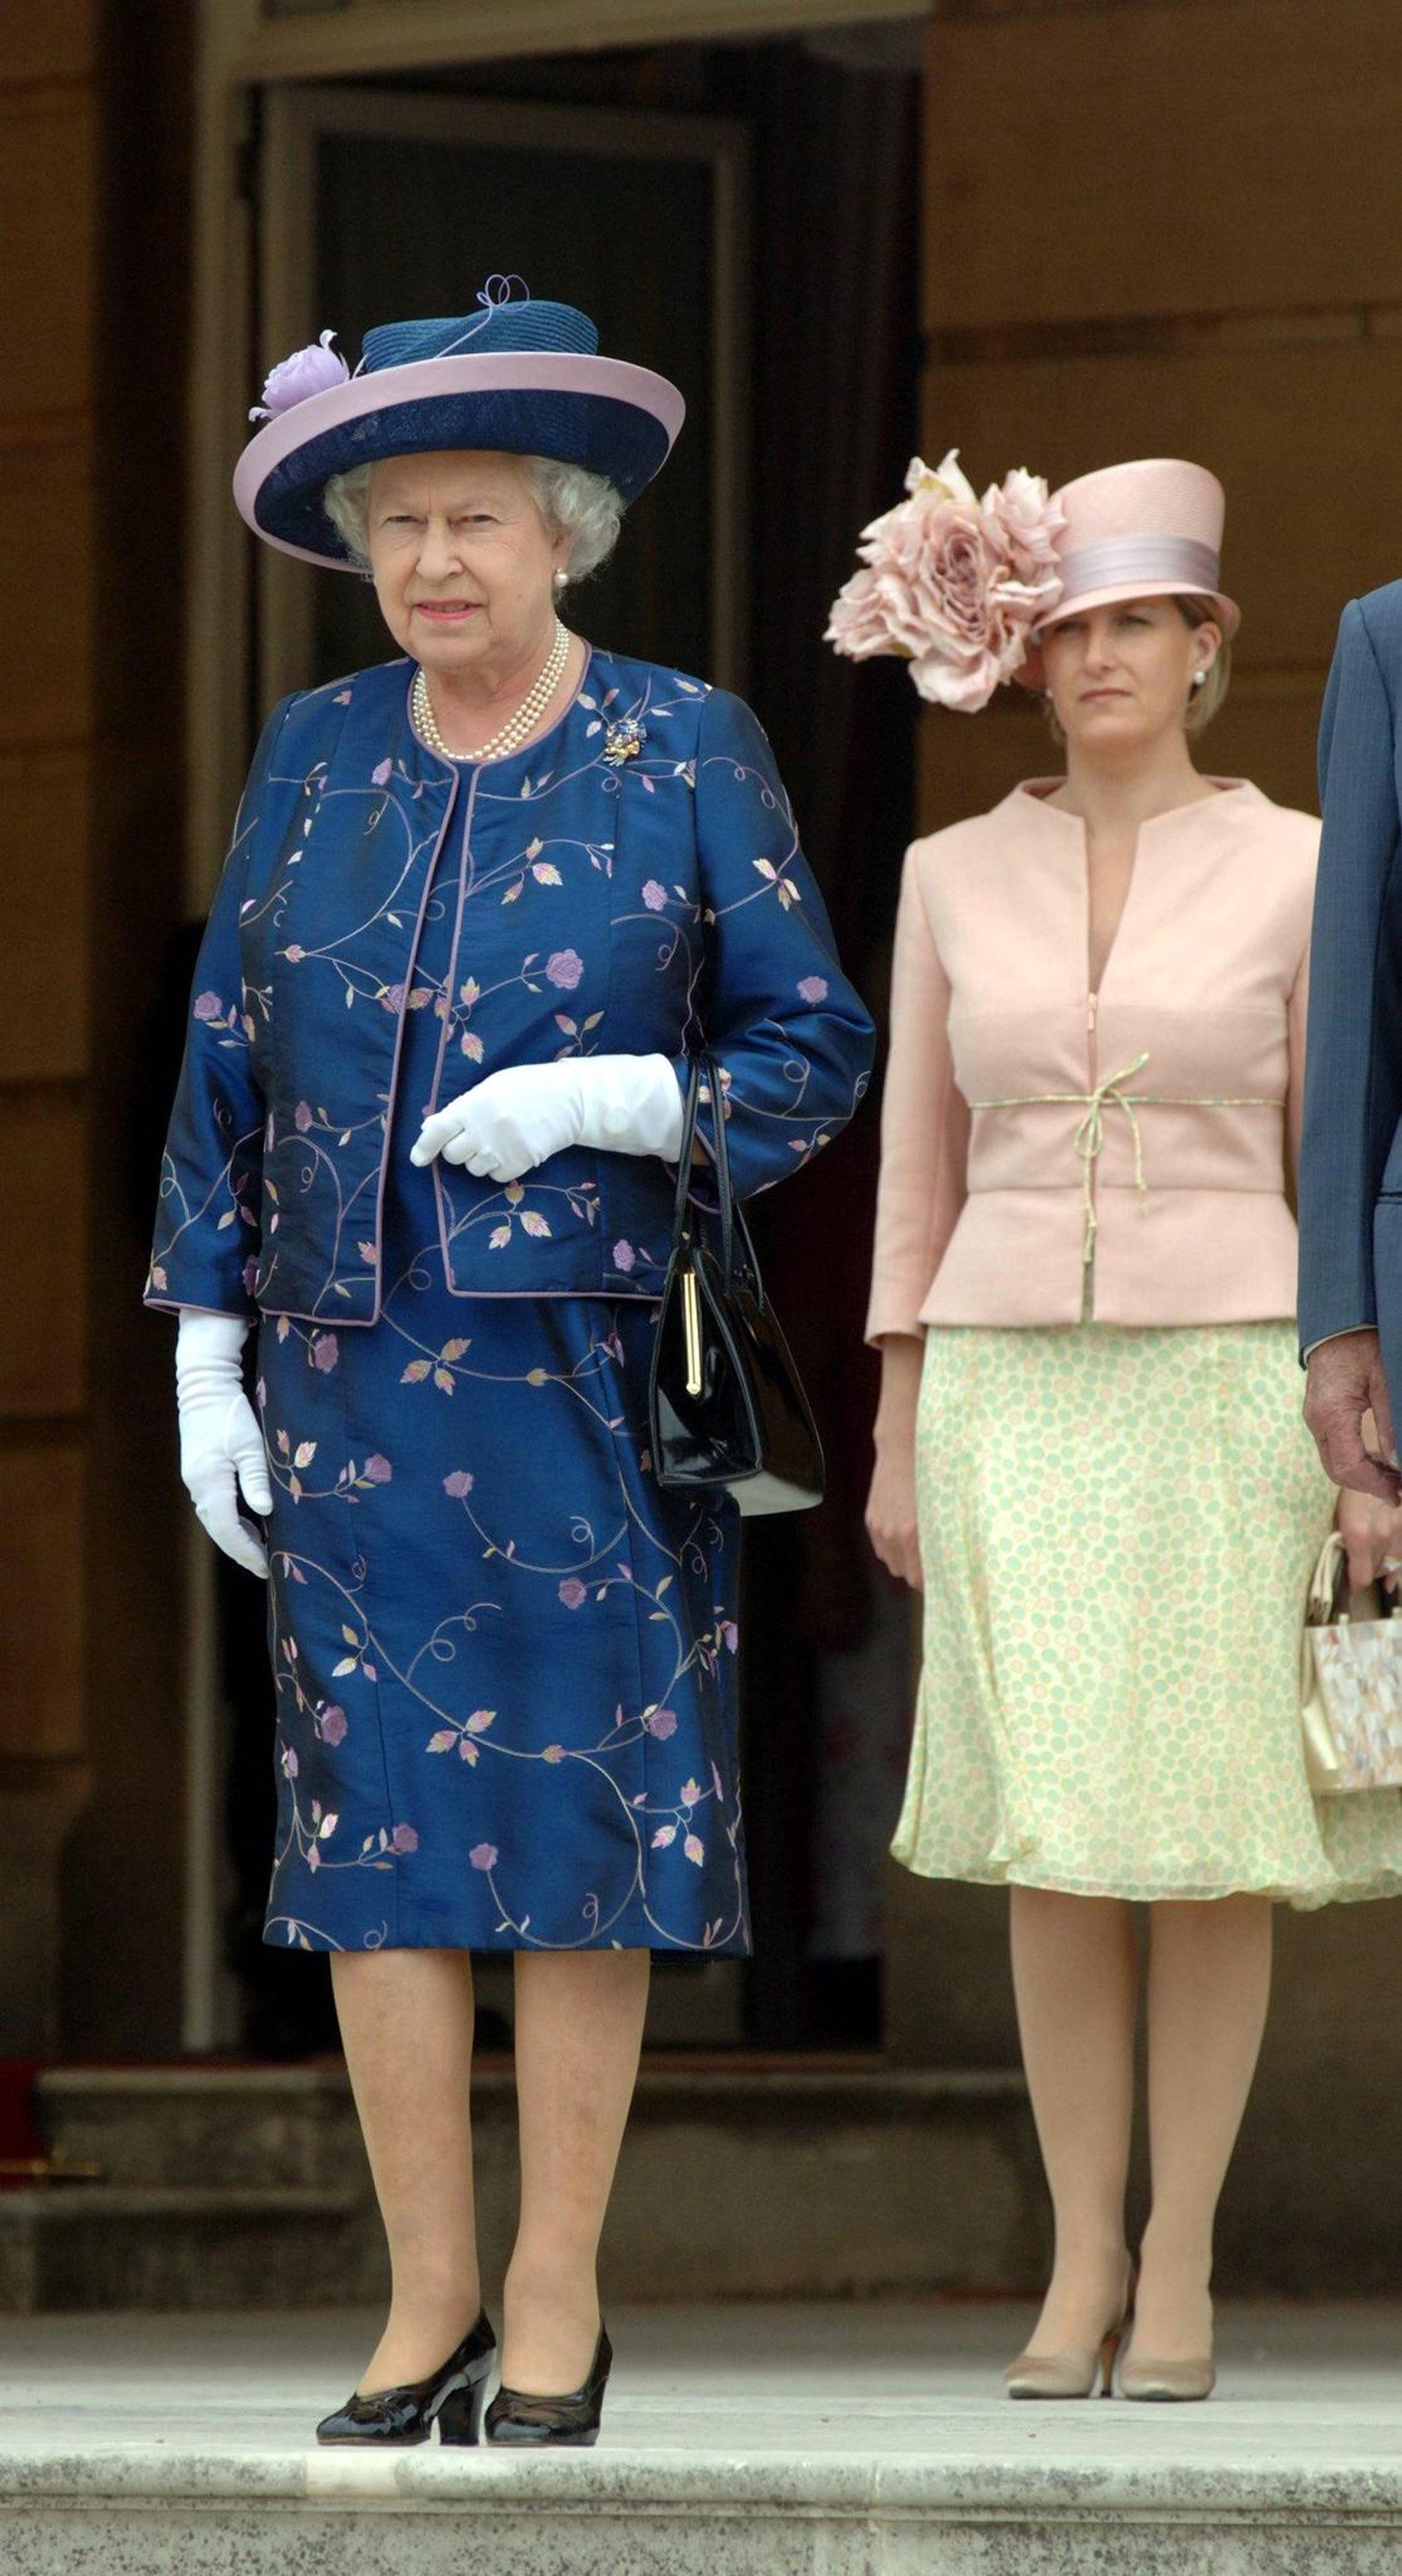 Königin Elizabeth II. und Sophie, Gräfin von Wessex, nehmen am 13. Juli 2006 an einer königlichen Gartenparty anlässlich des 50-jährigen Bestehens des Duke of Edinburgh's Award teil | Quelle: Getty Images 